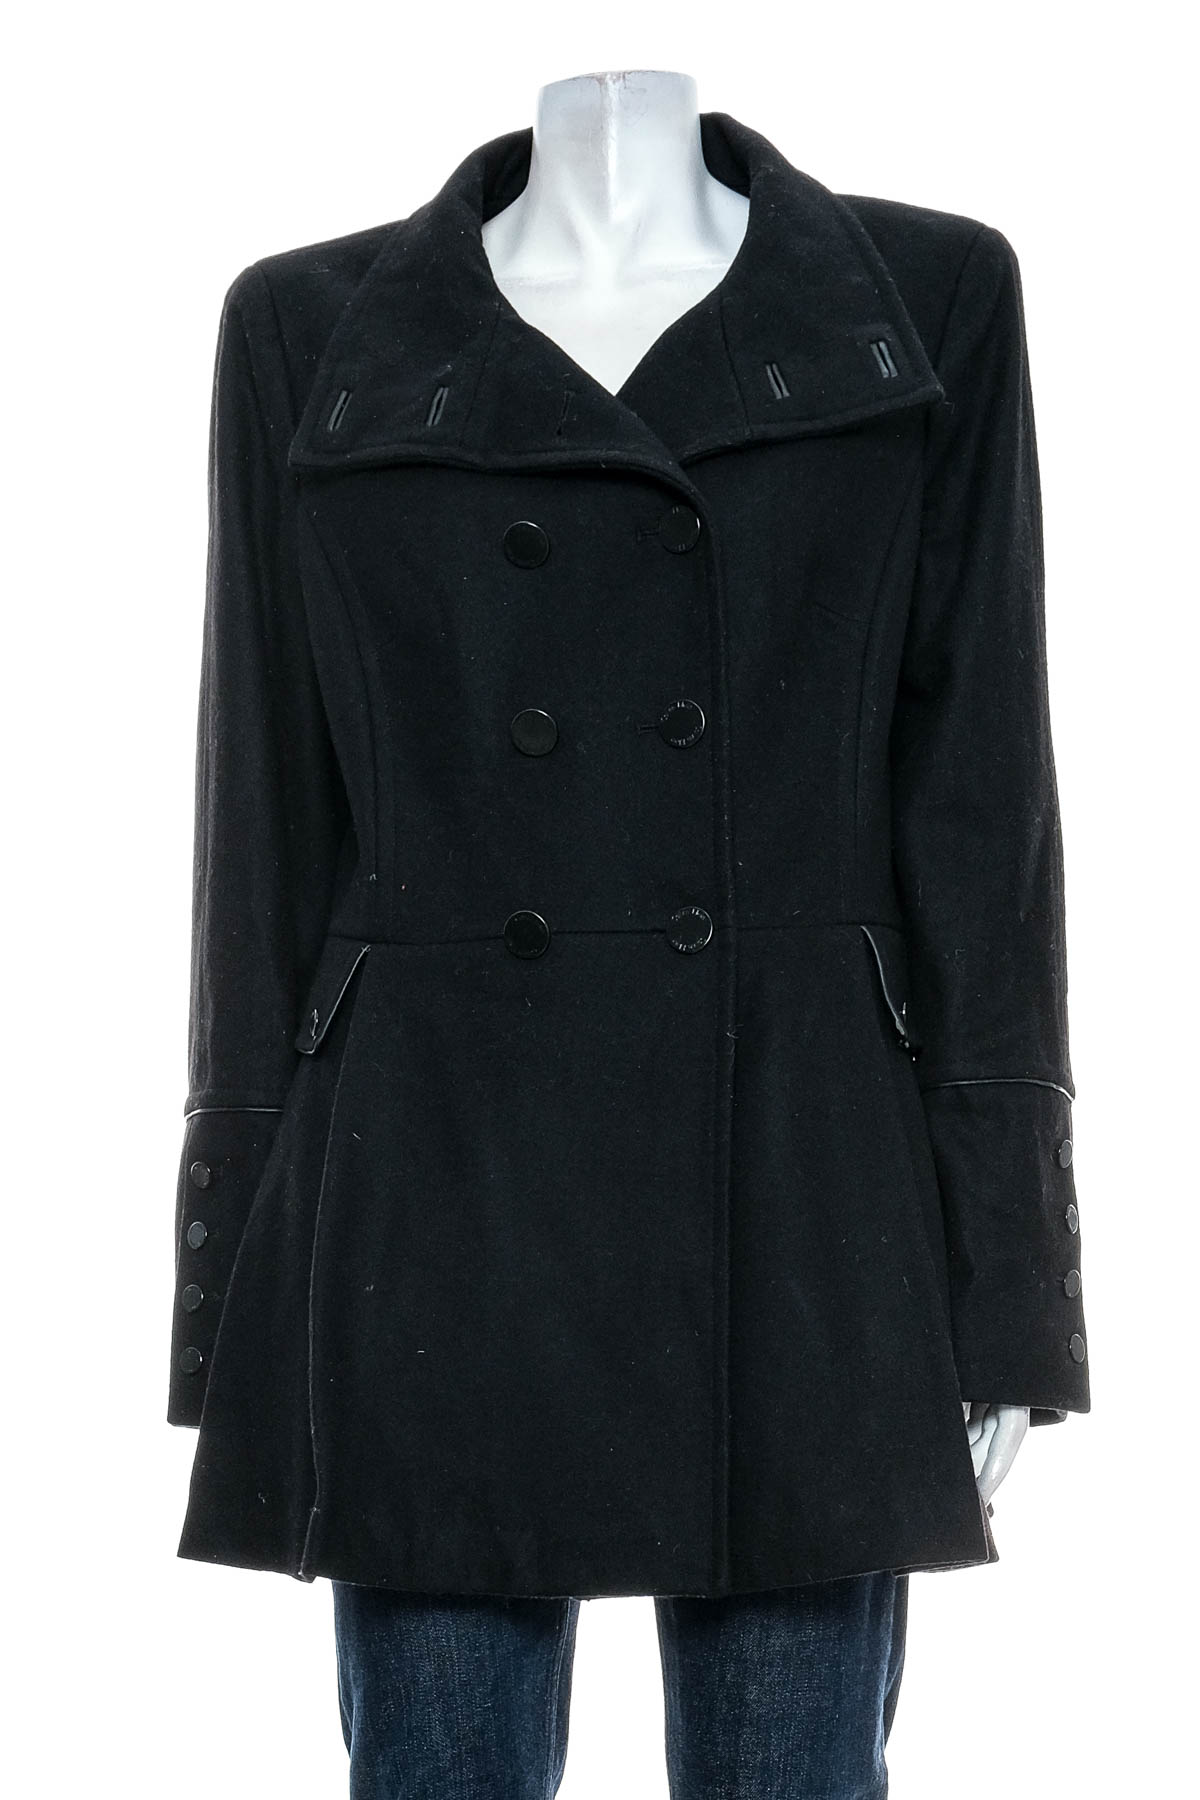 Women's coat - Calvin Klein - 0